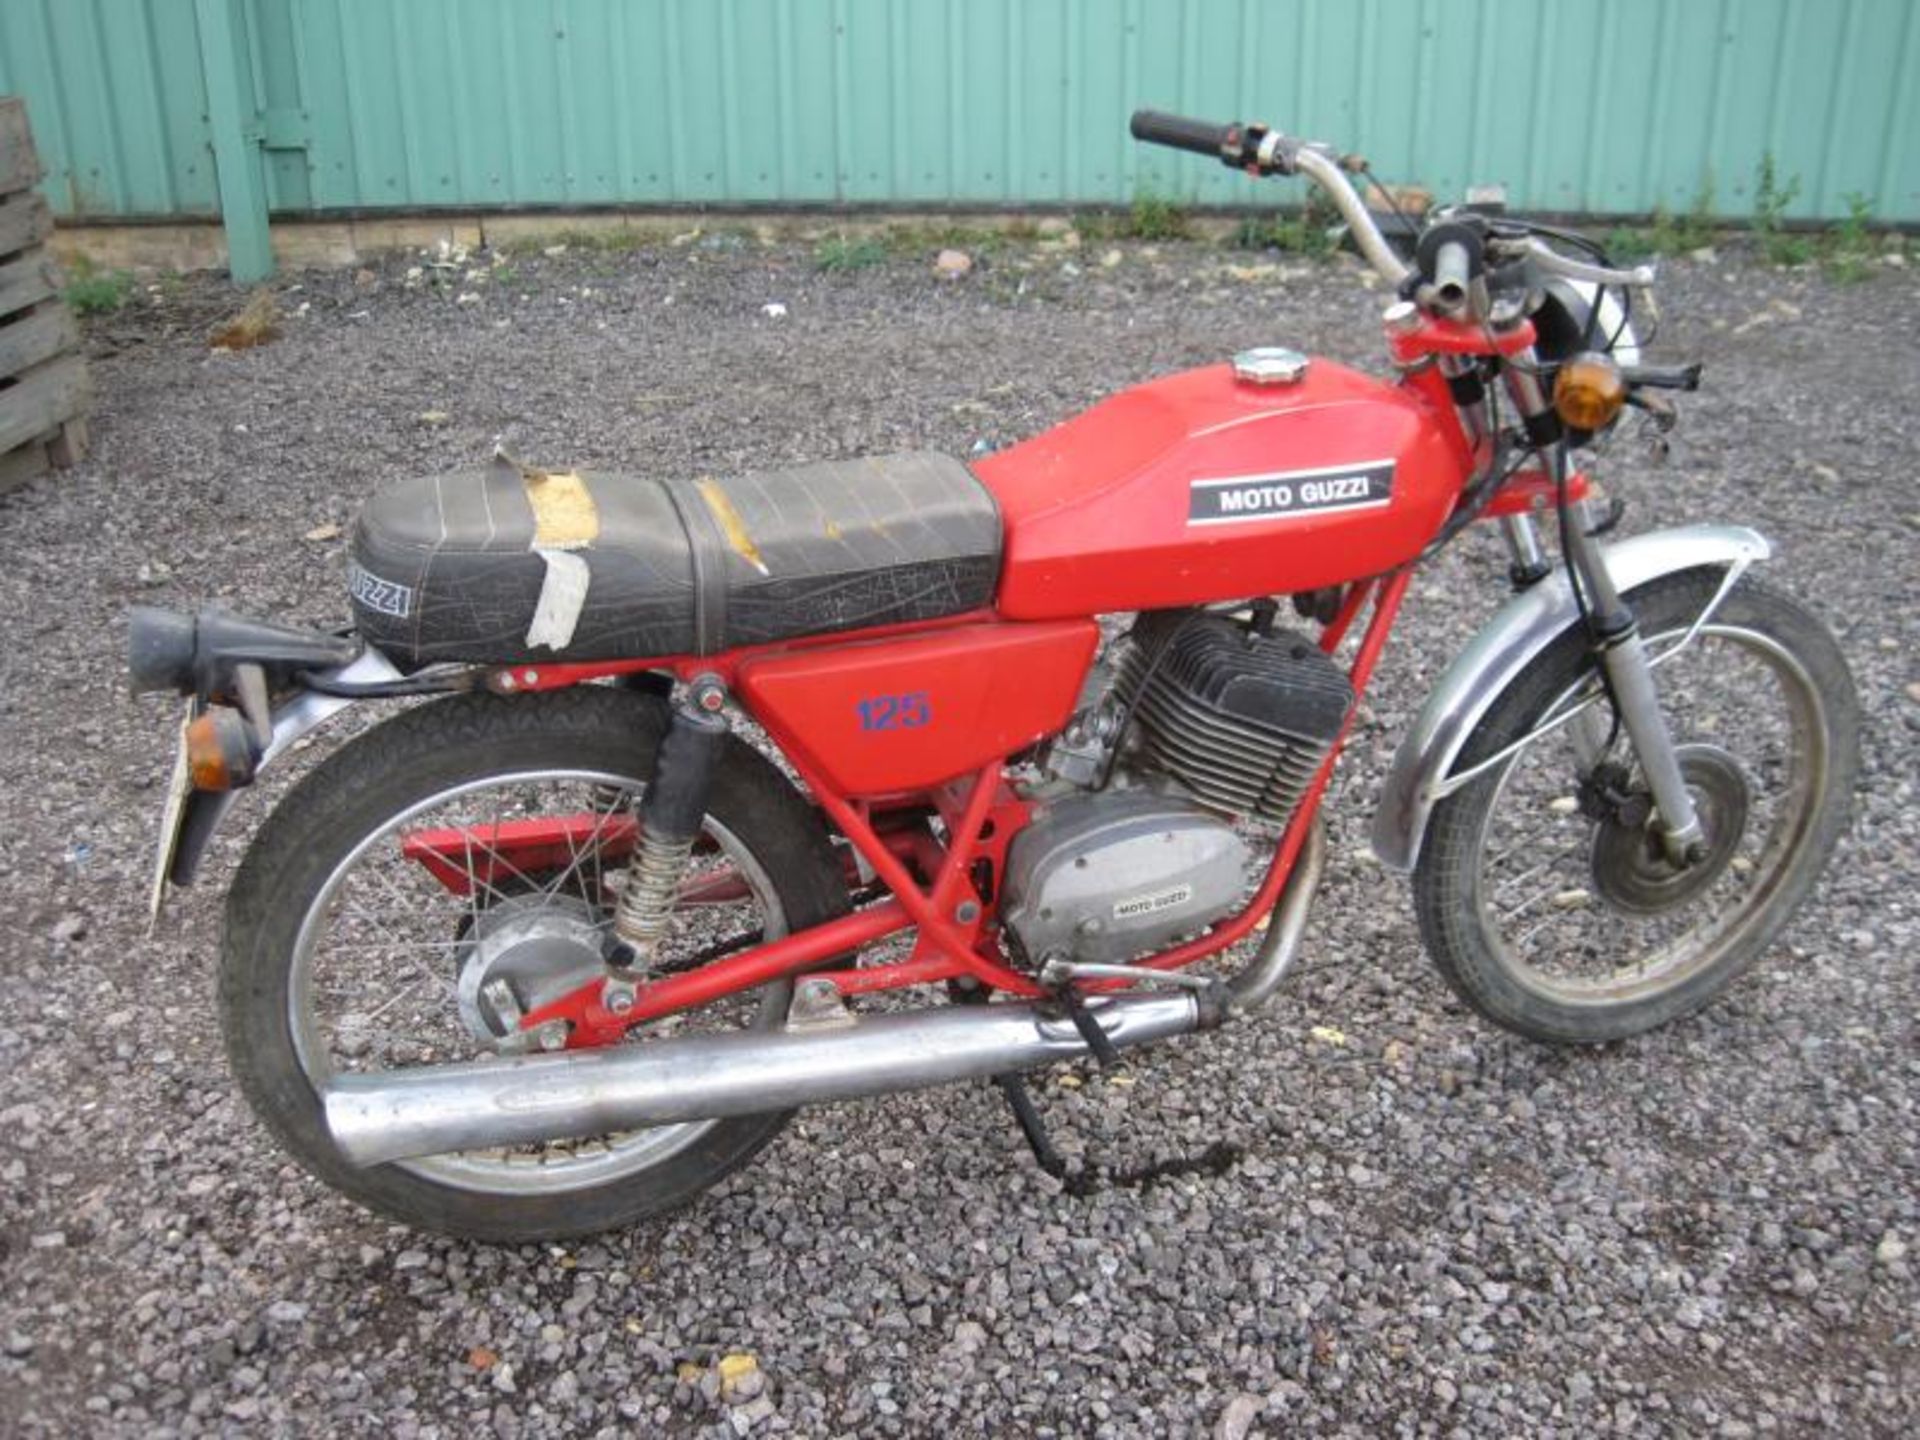 Circa 1978 125cc Moto Guzzi Torismo Reg. No. N/A Frame No. MD 15619 Engine No. MD 15673 A majorly